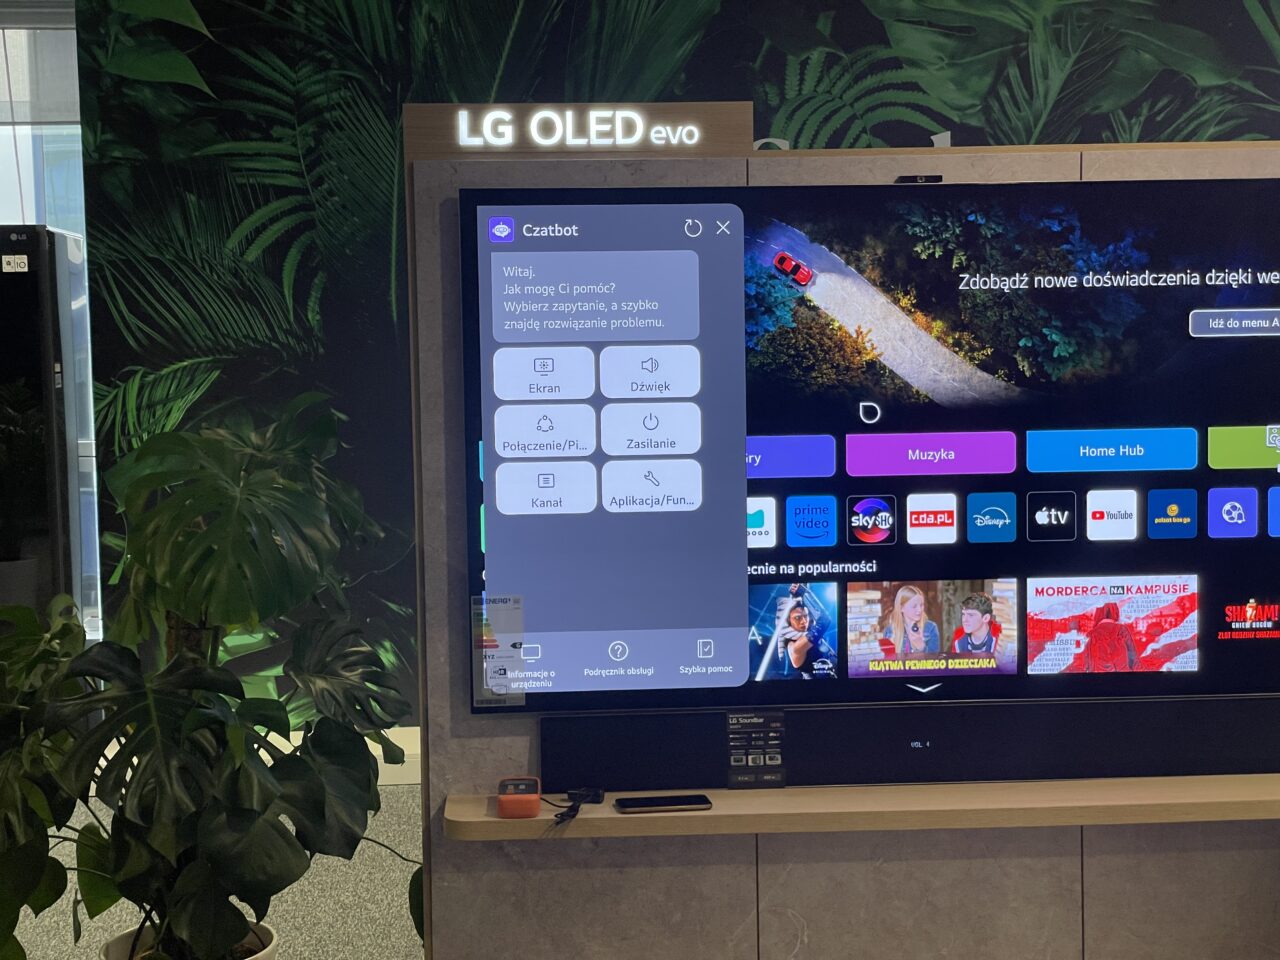 Telewizor LG OLED Evo w salonie z rośliną doniczkową po lewej stronie oraz ekranem z aplikacjami i chatbotem.